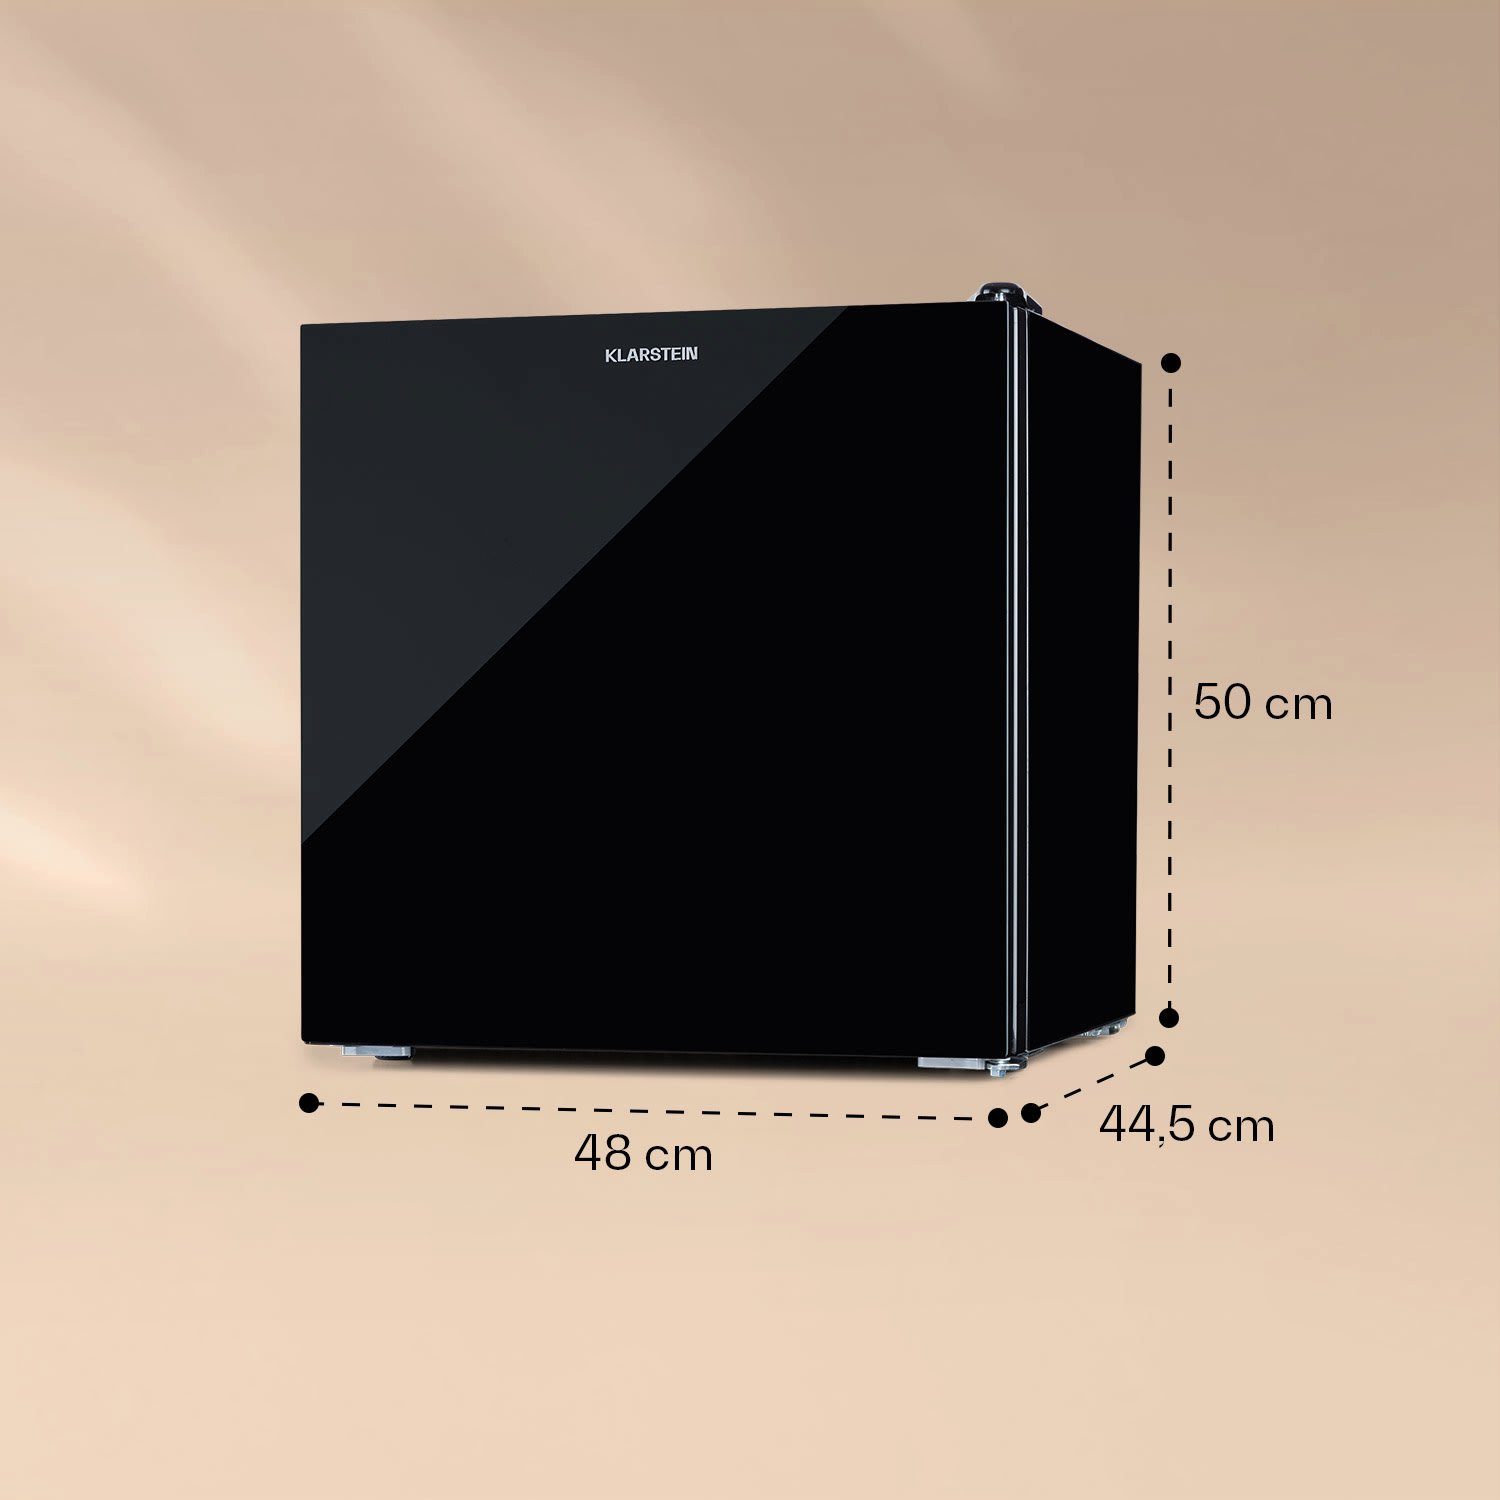 Kühlschrank 48 10036164, Klarstein Top cm Schwarz Table HEA20-LuminFro-Blk hoch, cm 44.5 breit